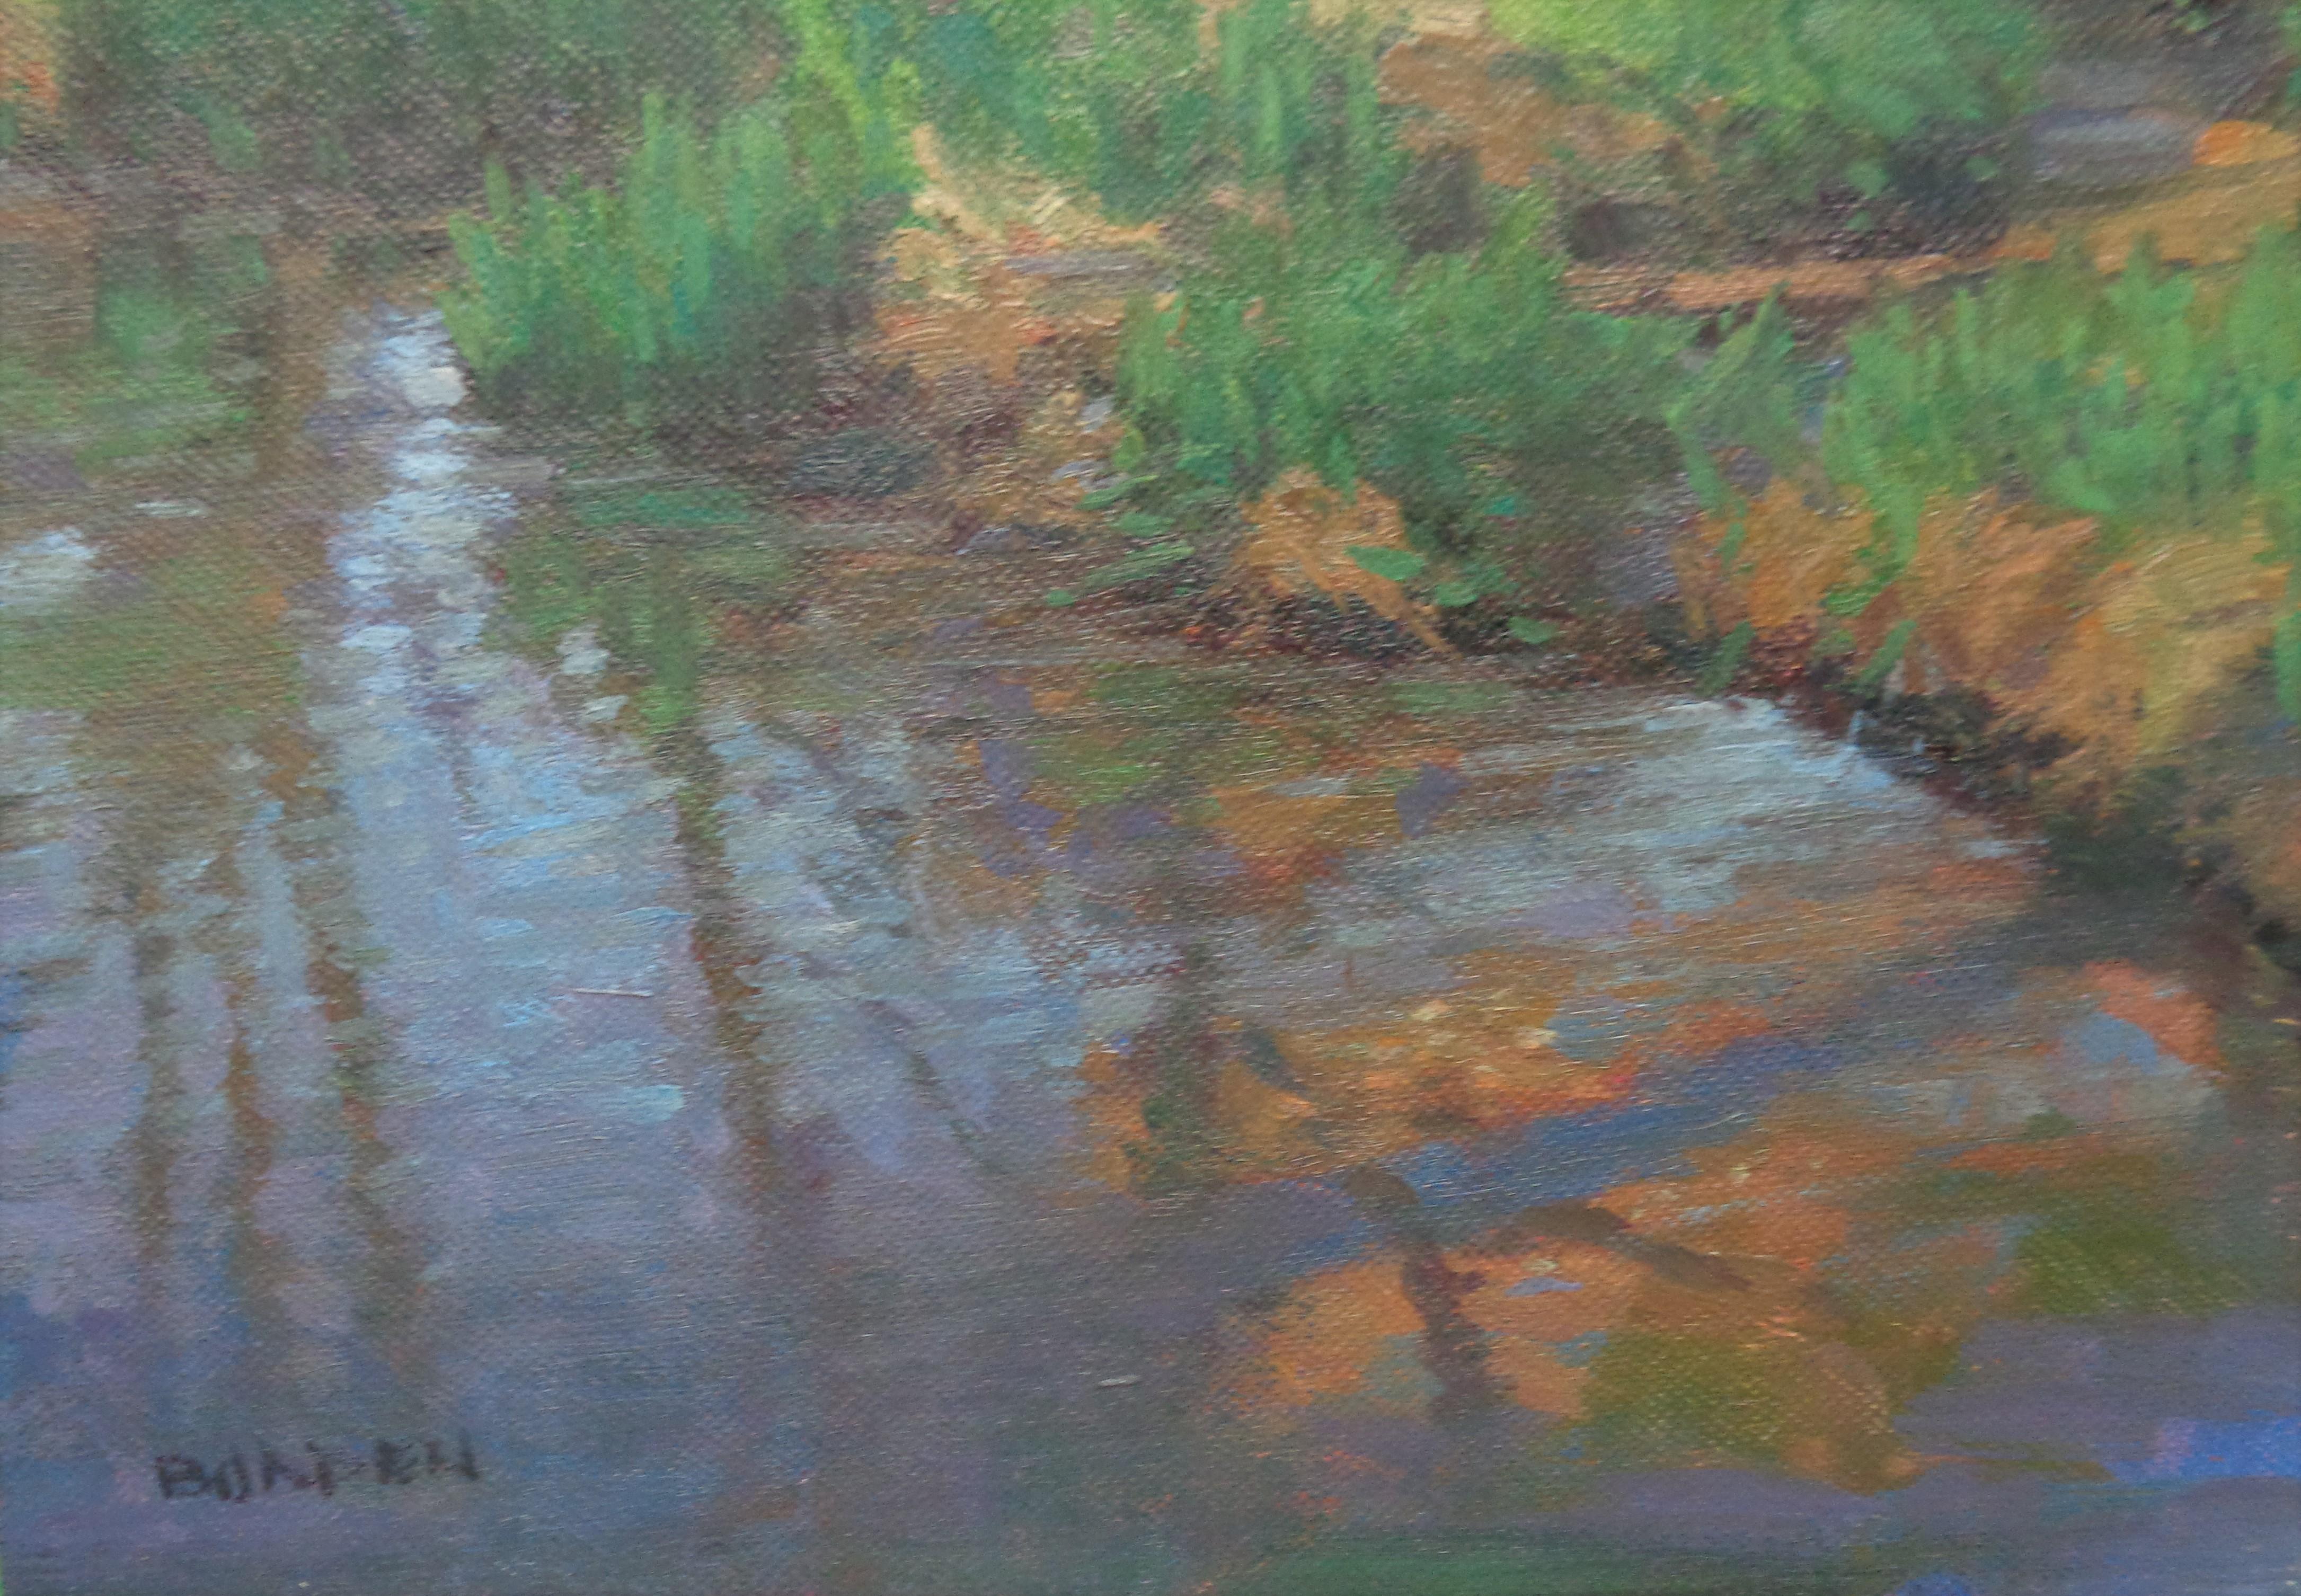  Impressionistic Pond Landscape Oil Painting Michael Budden Spring Pond For Sale 3